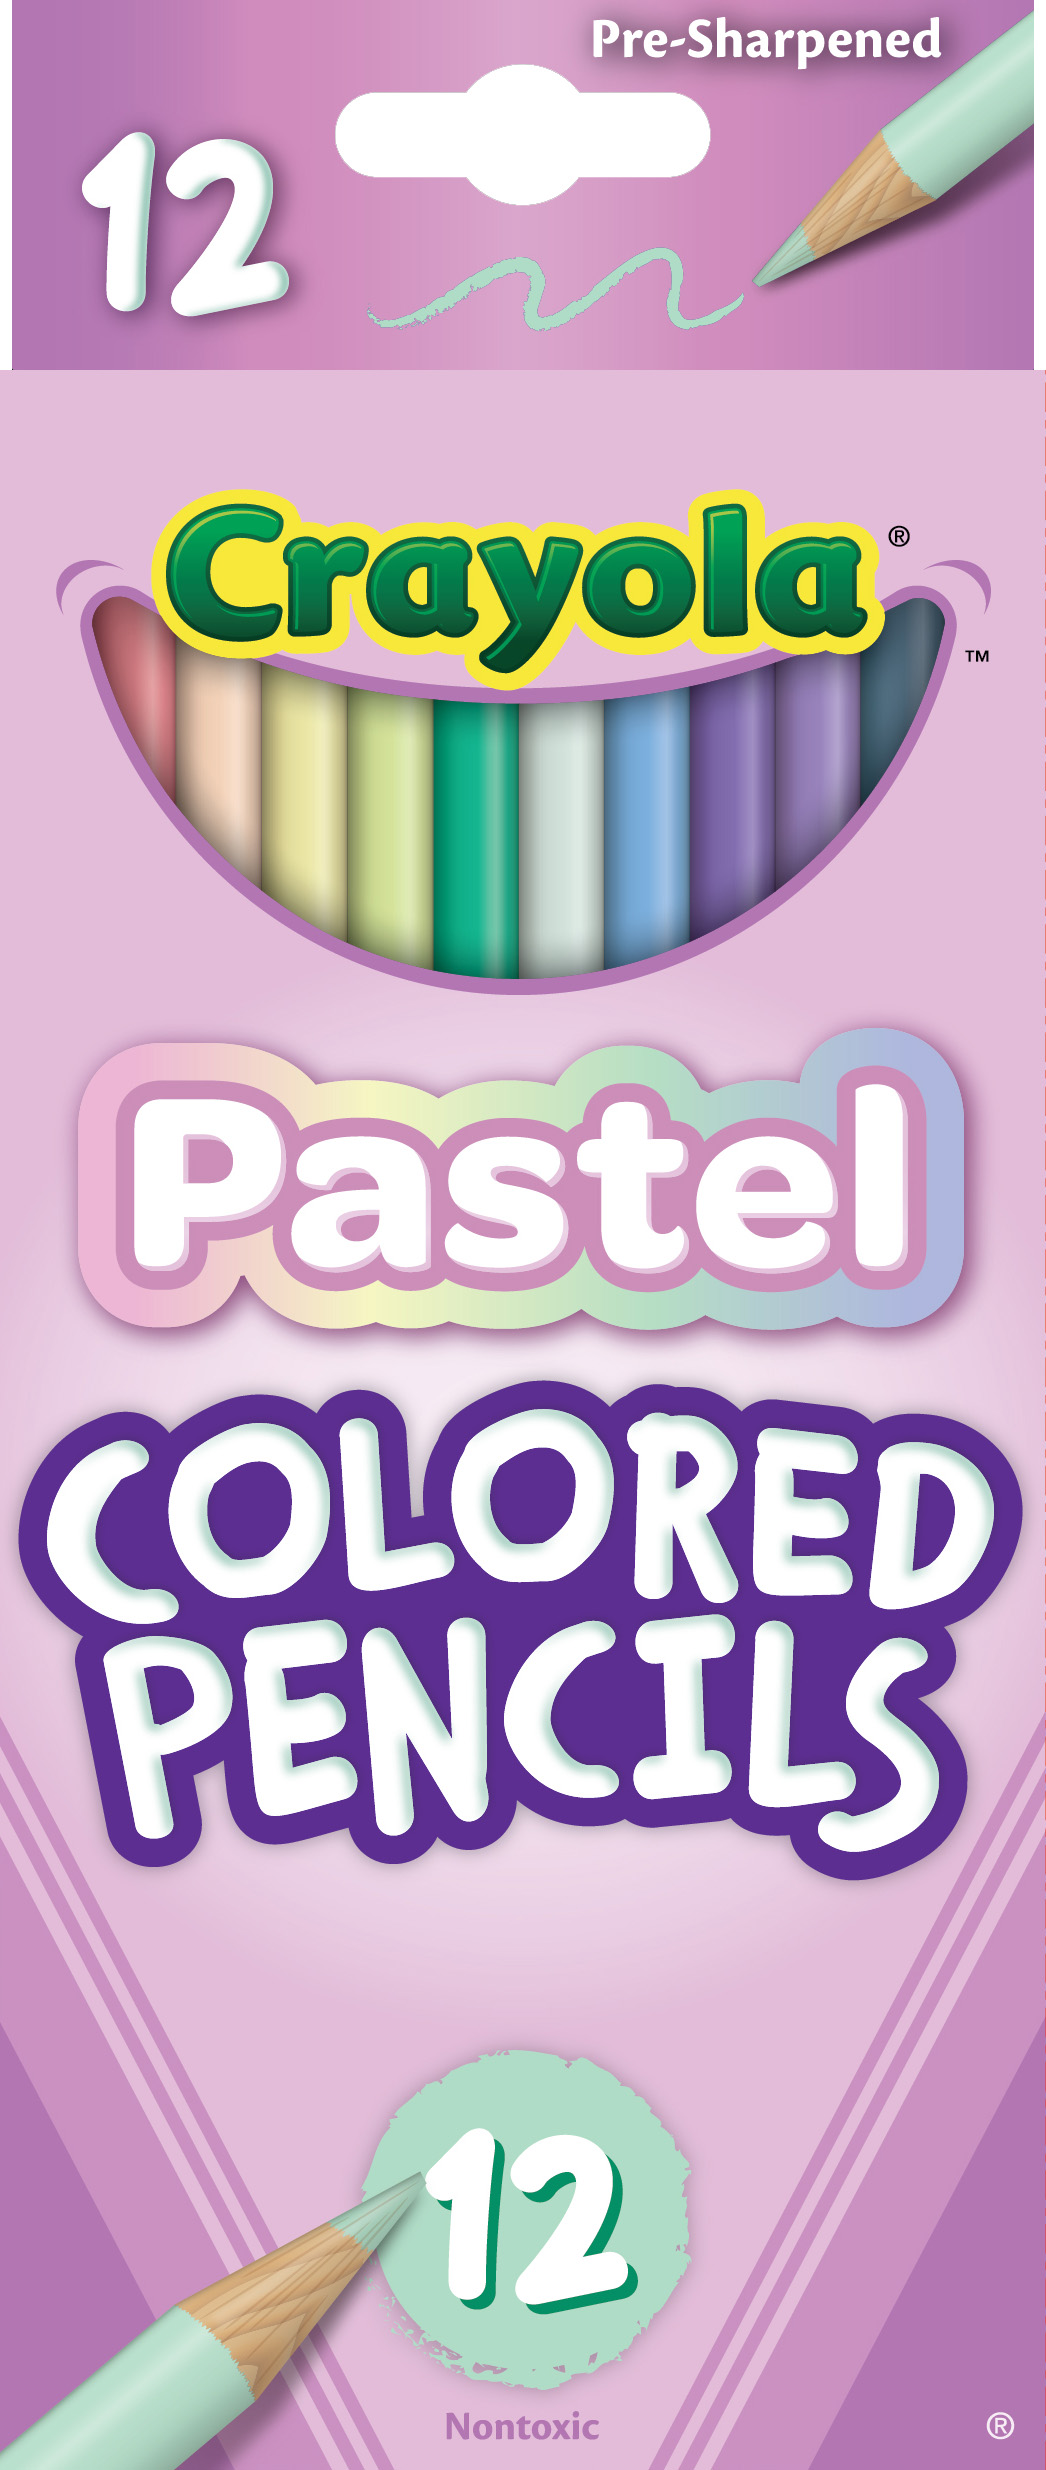 Color Block Pens - Set of 2 - Lilac + Cornflower